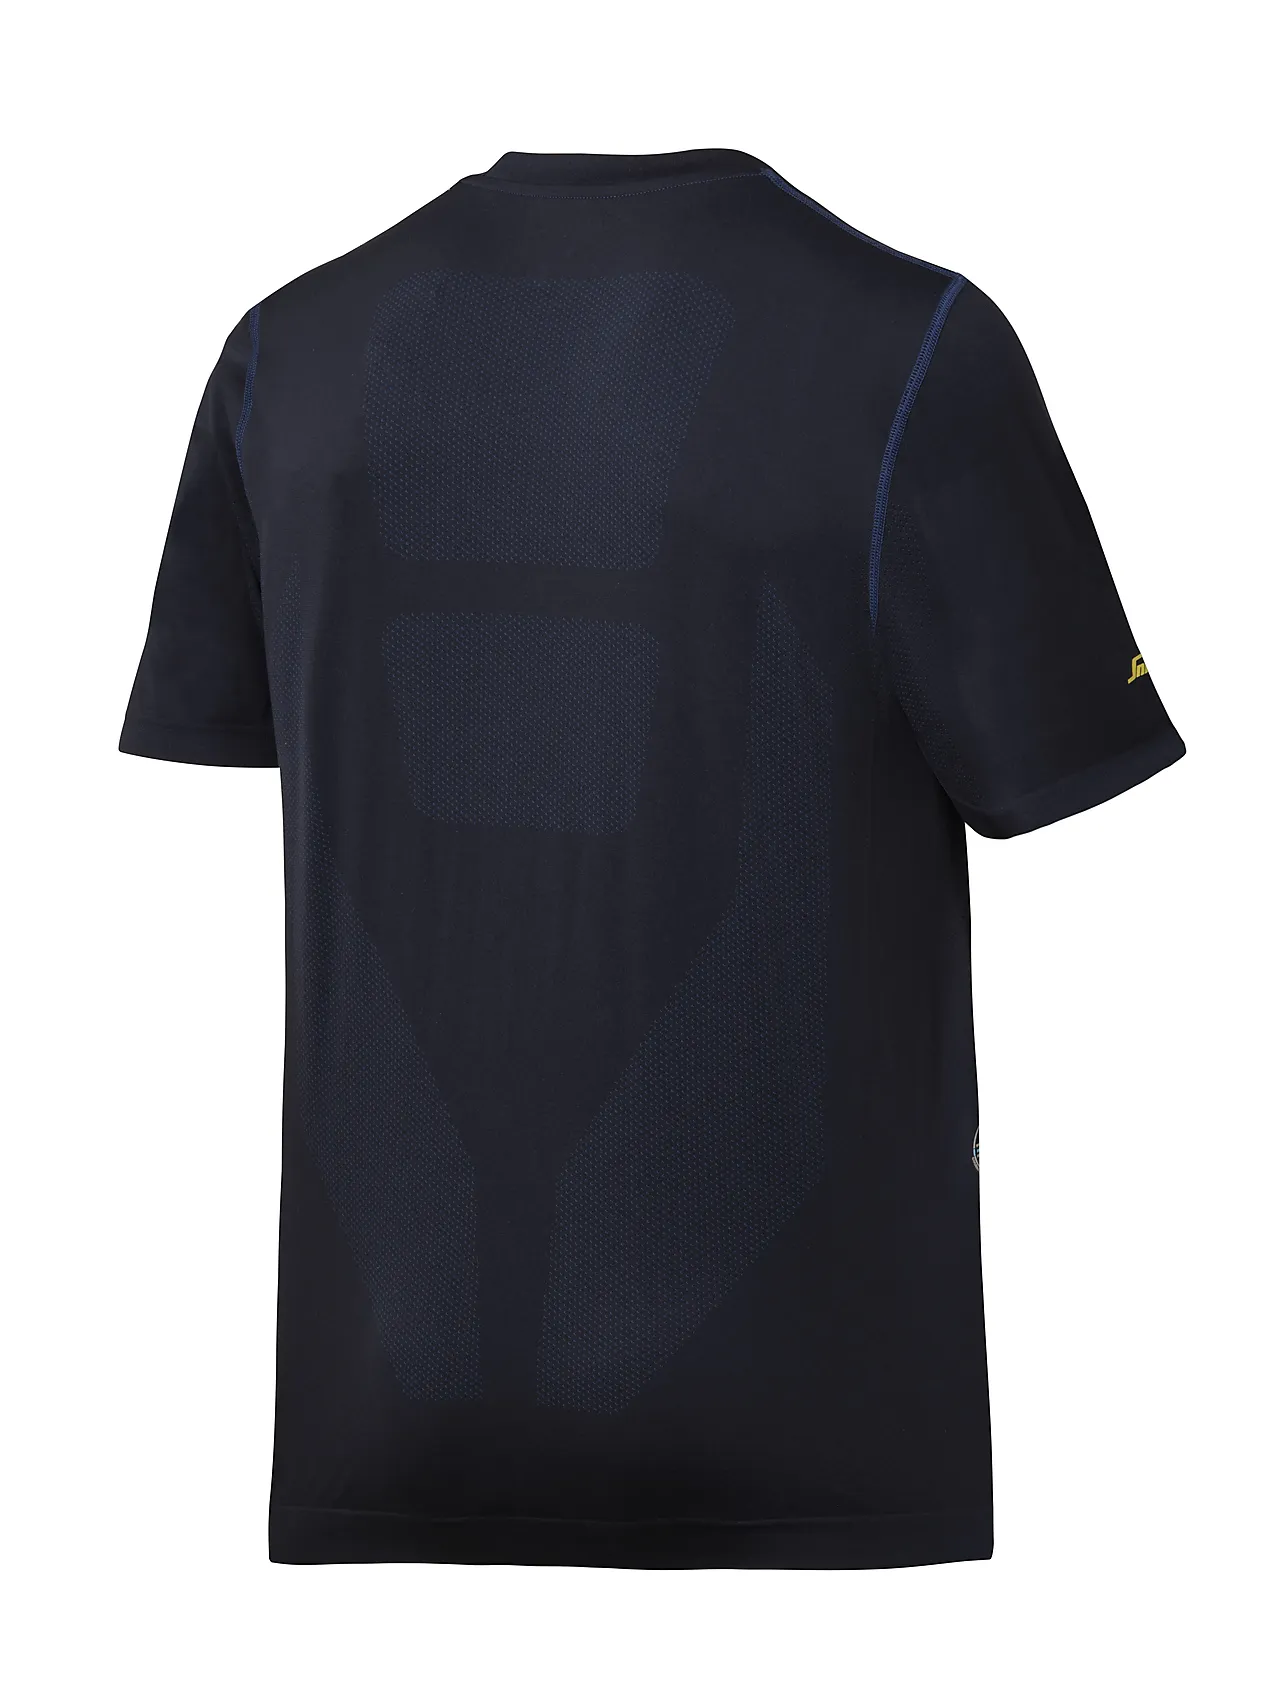 T-skjorte 2519 mørkeblå str XS Snickers 37,5 tech flexiwork null - null - 2